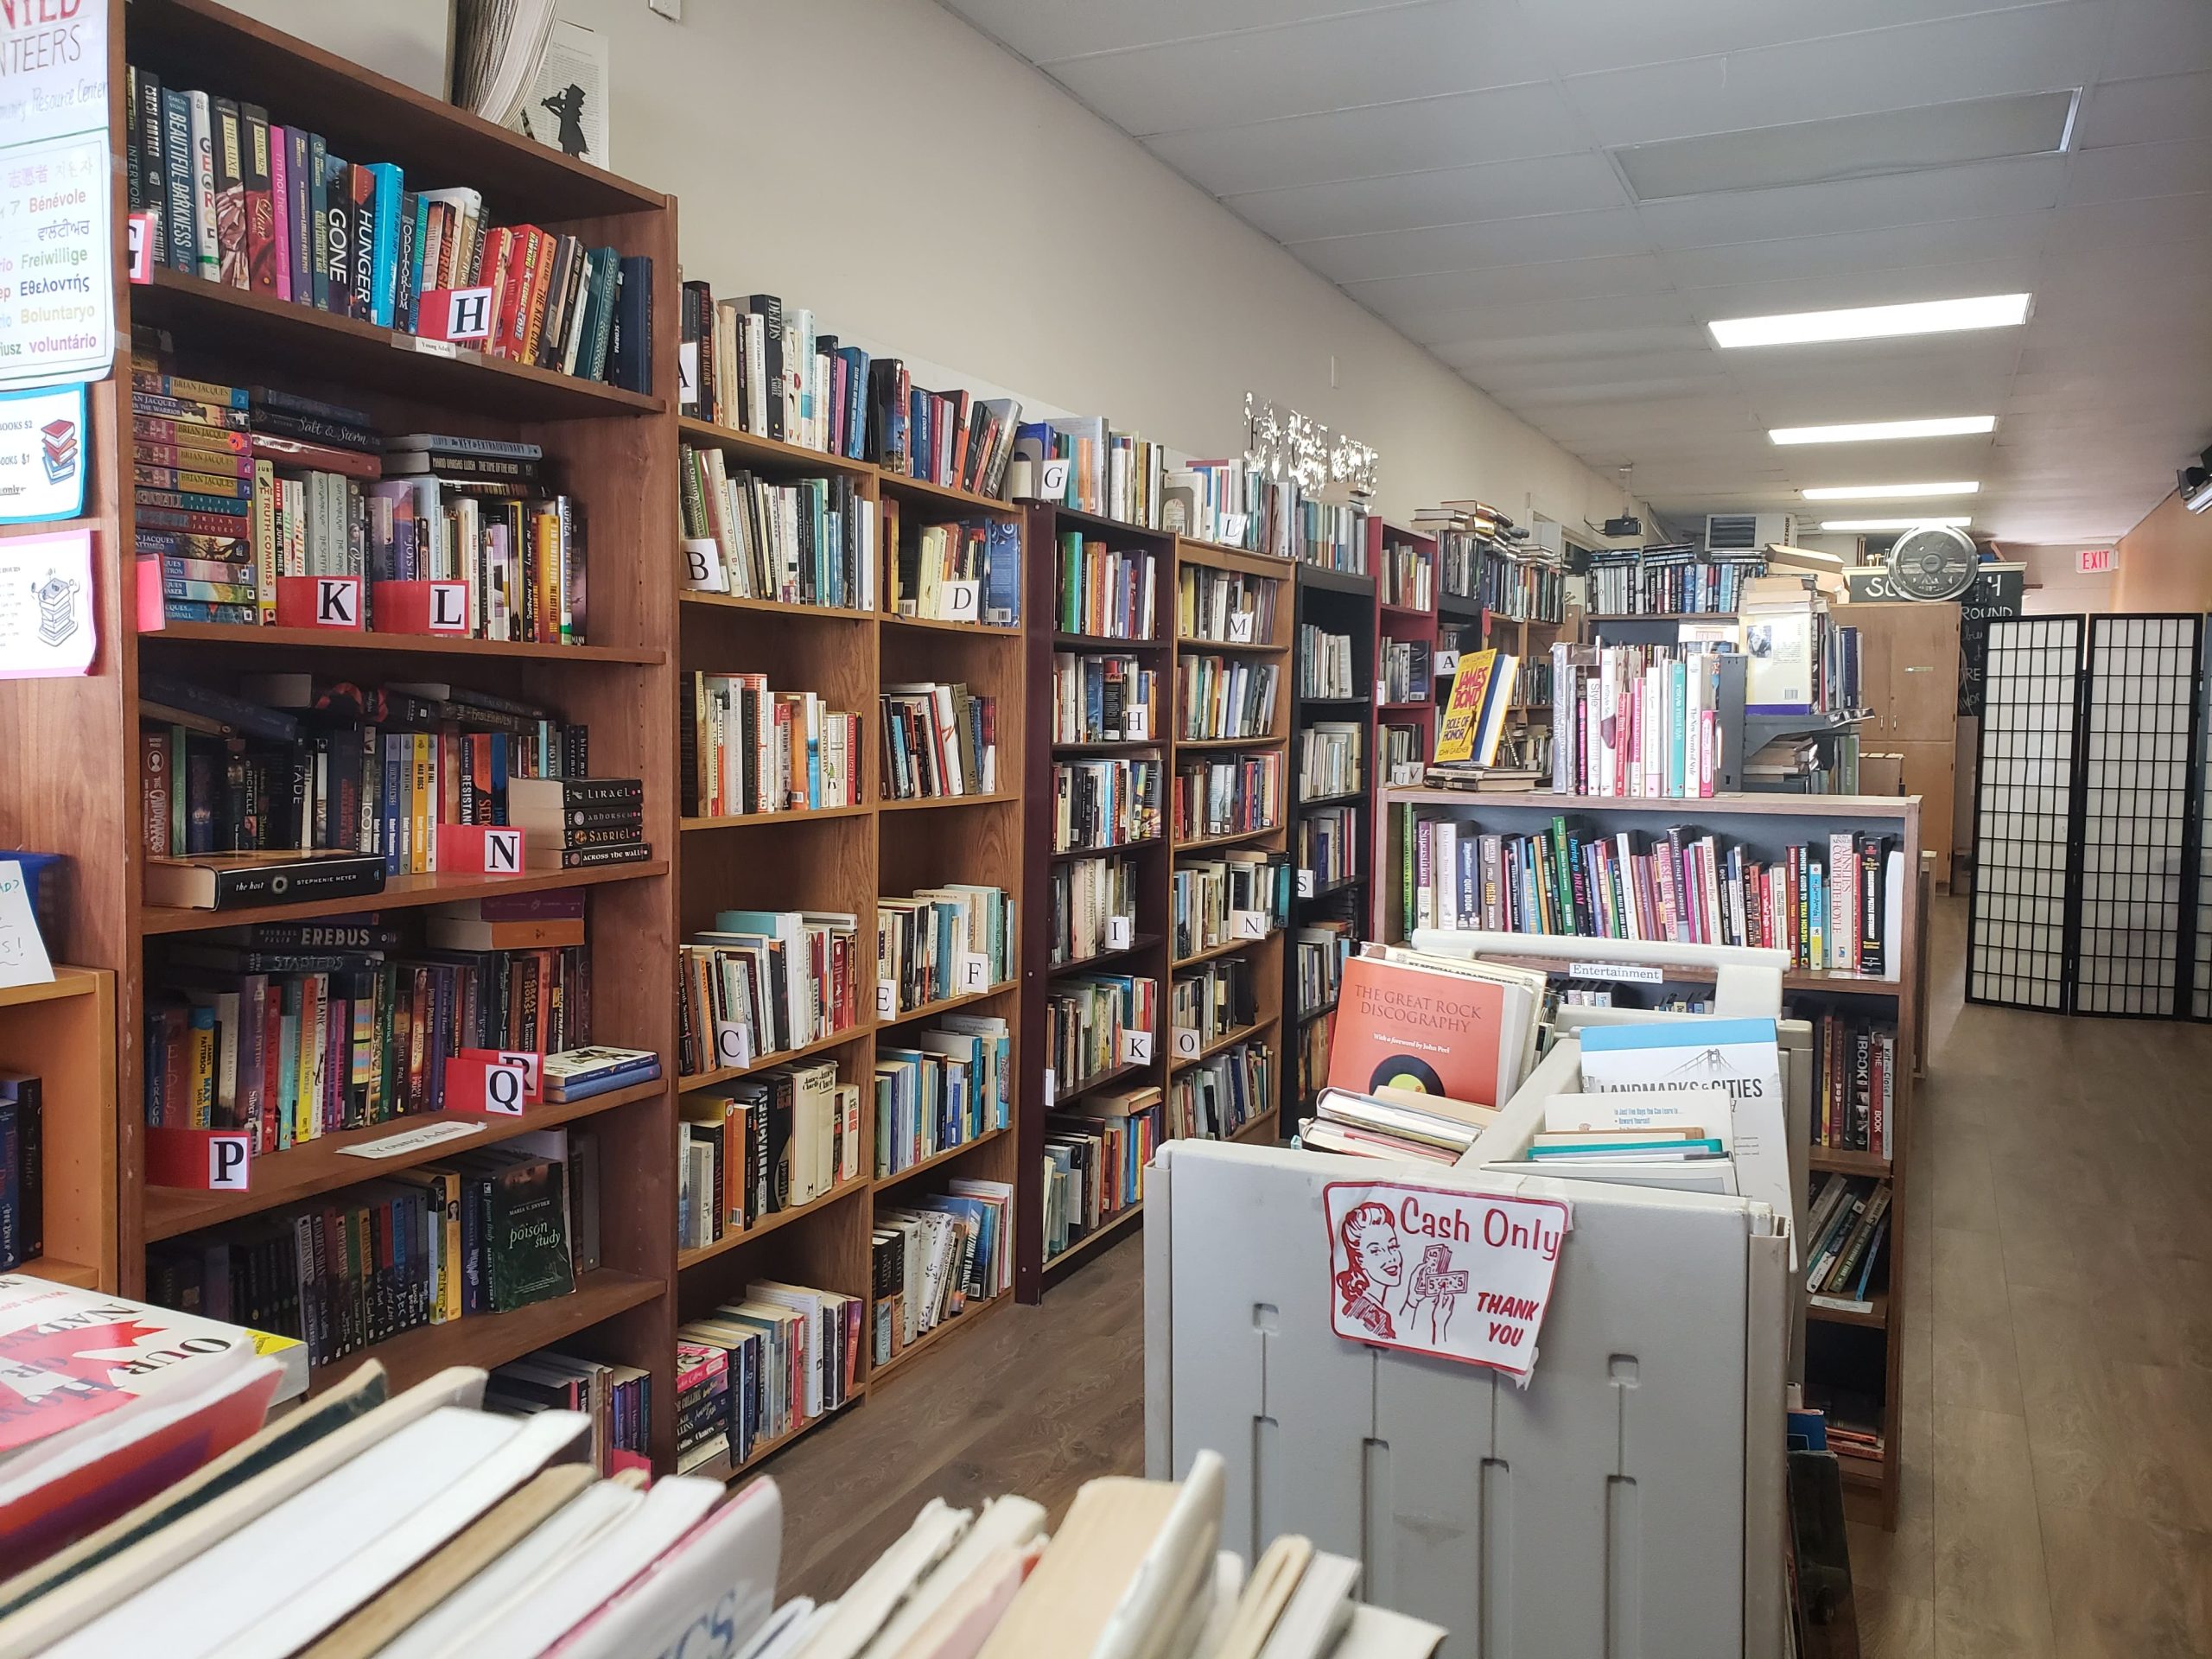 A long wall full of books on shelves